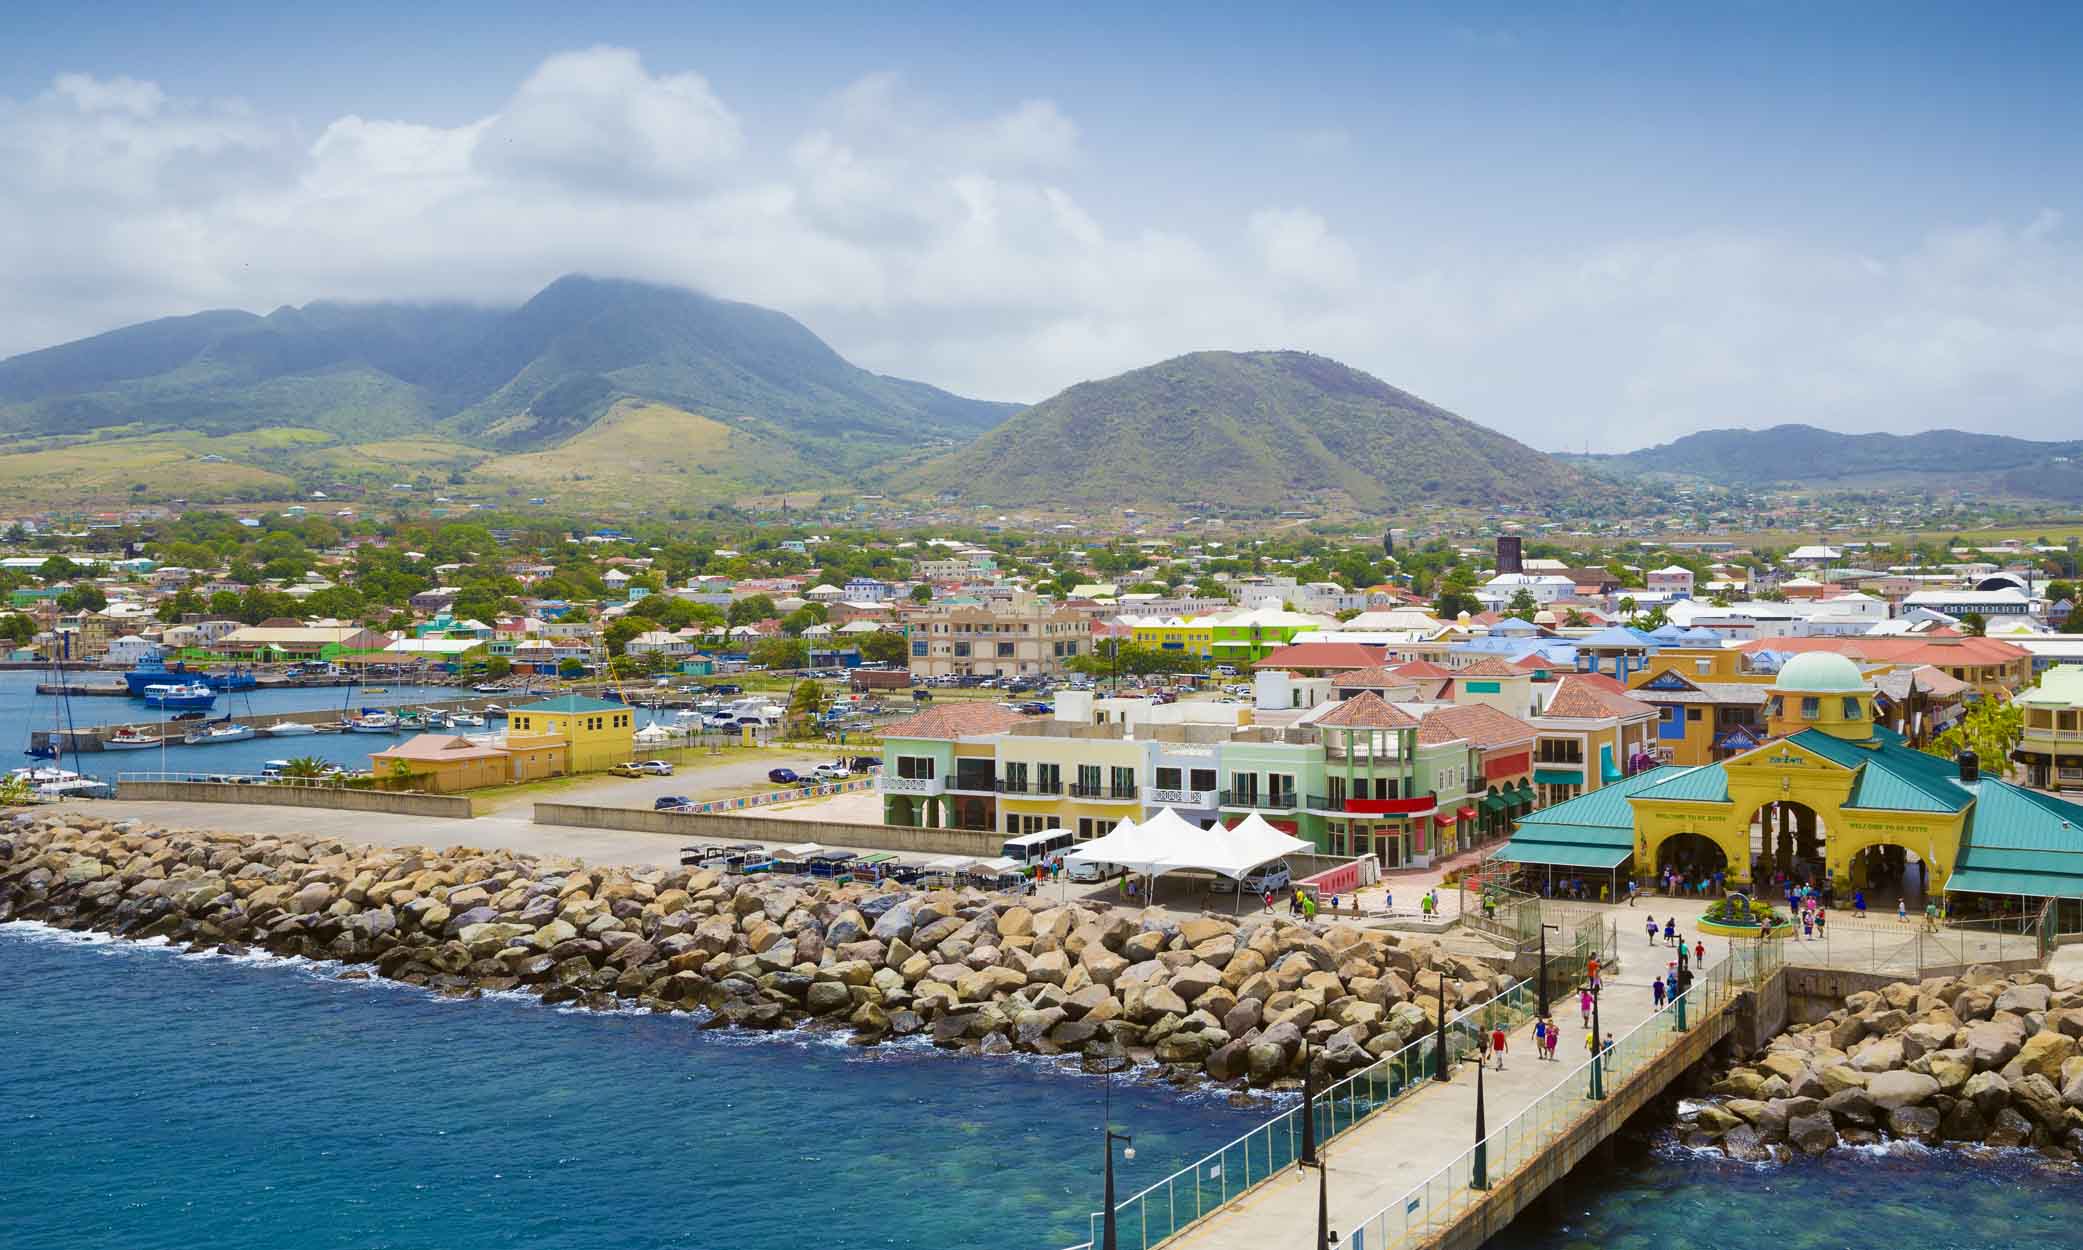 Quyền công dân St Kitts và Nevis theo diện đầu tư được áp dụng từ năm 1984.